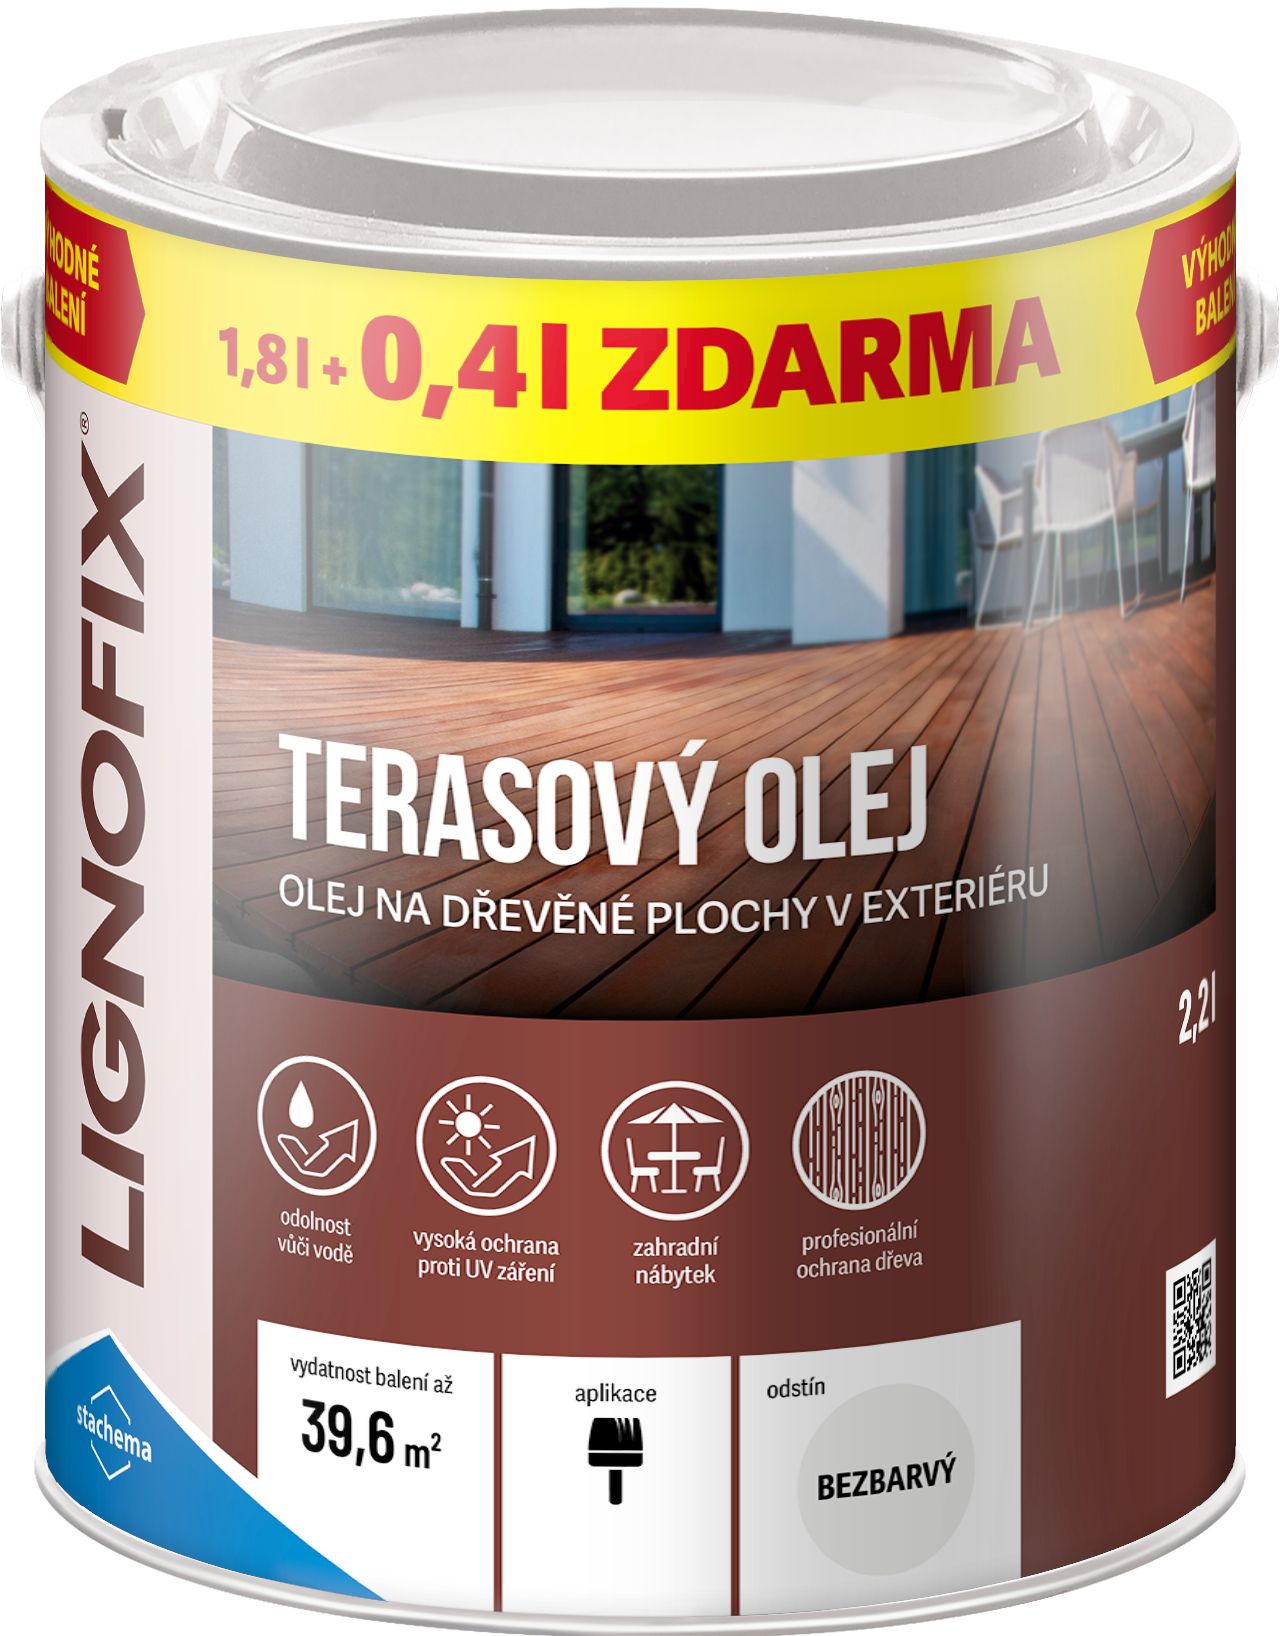 Olej terasový Lignofix bezbarvý, 1,8 l + 0,4 l zdarma